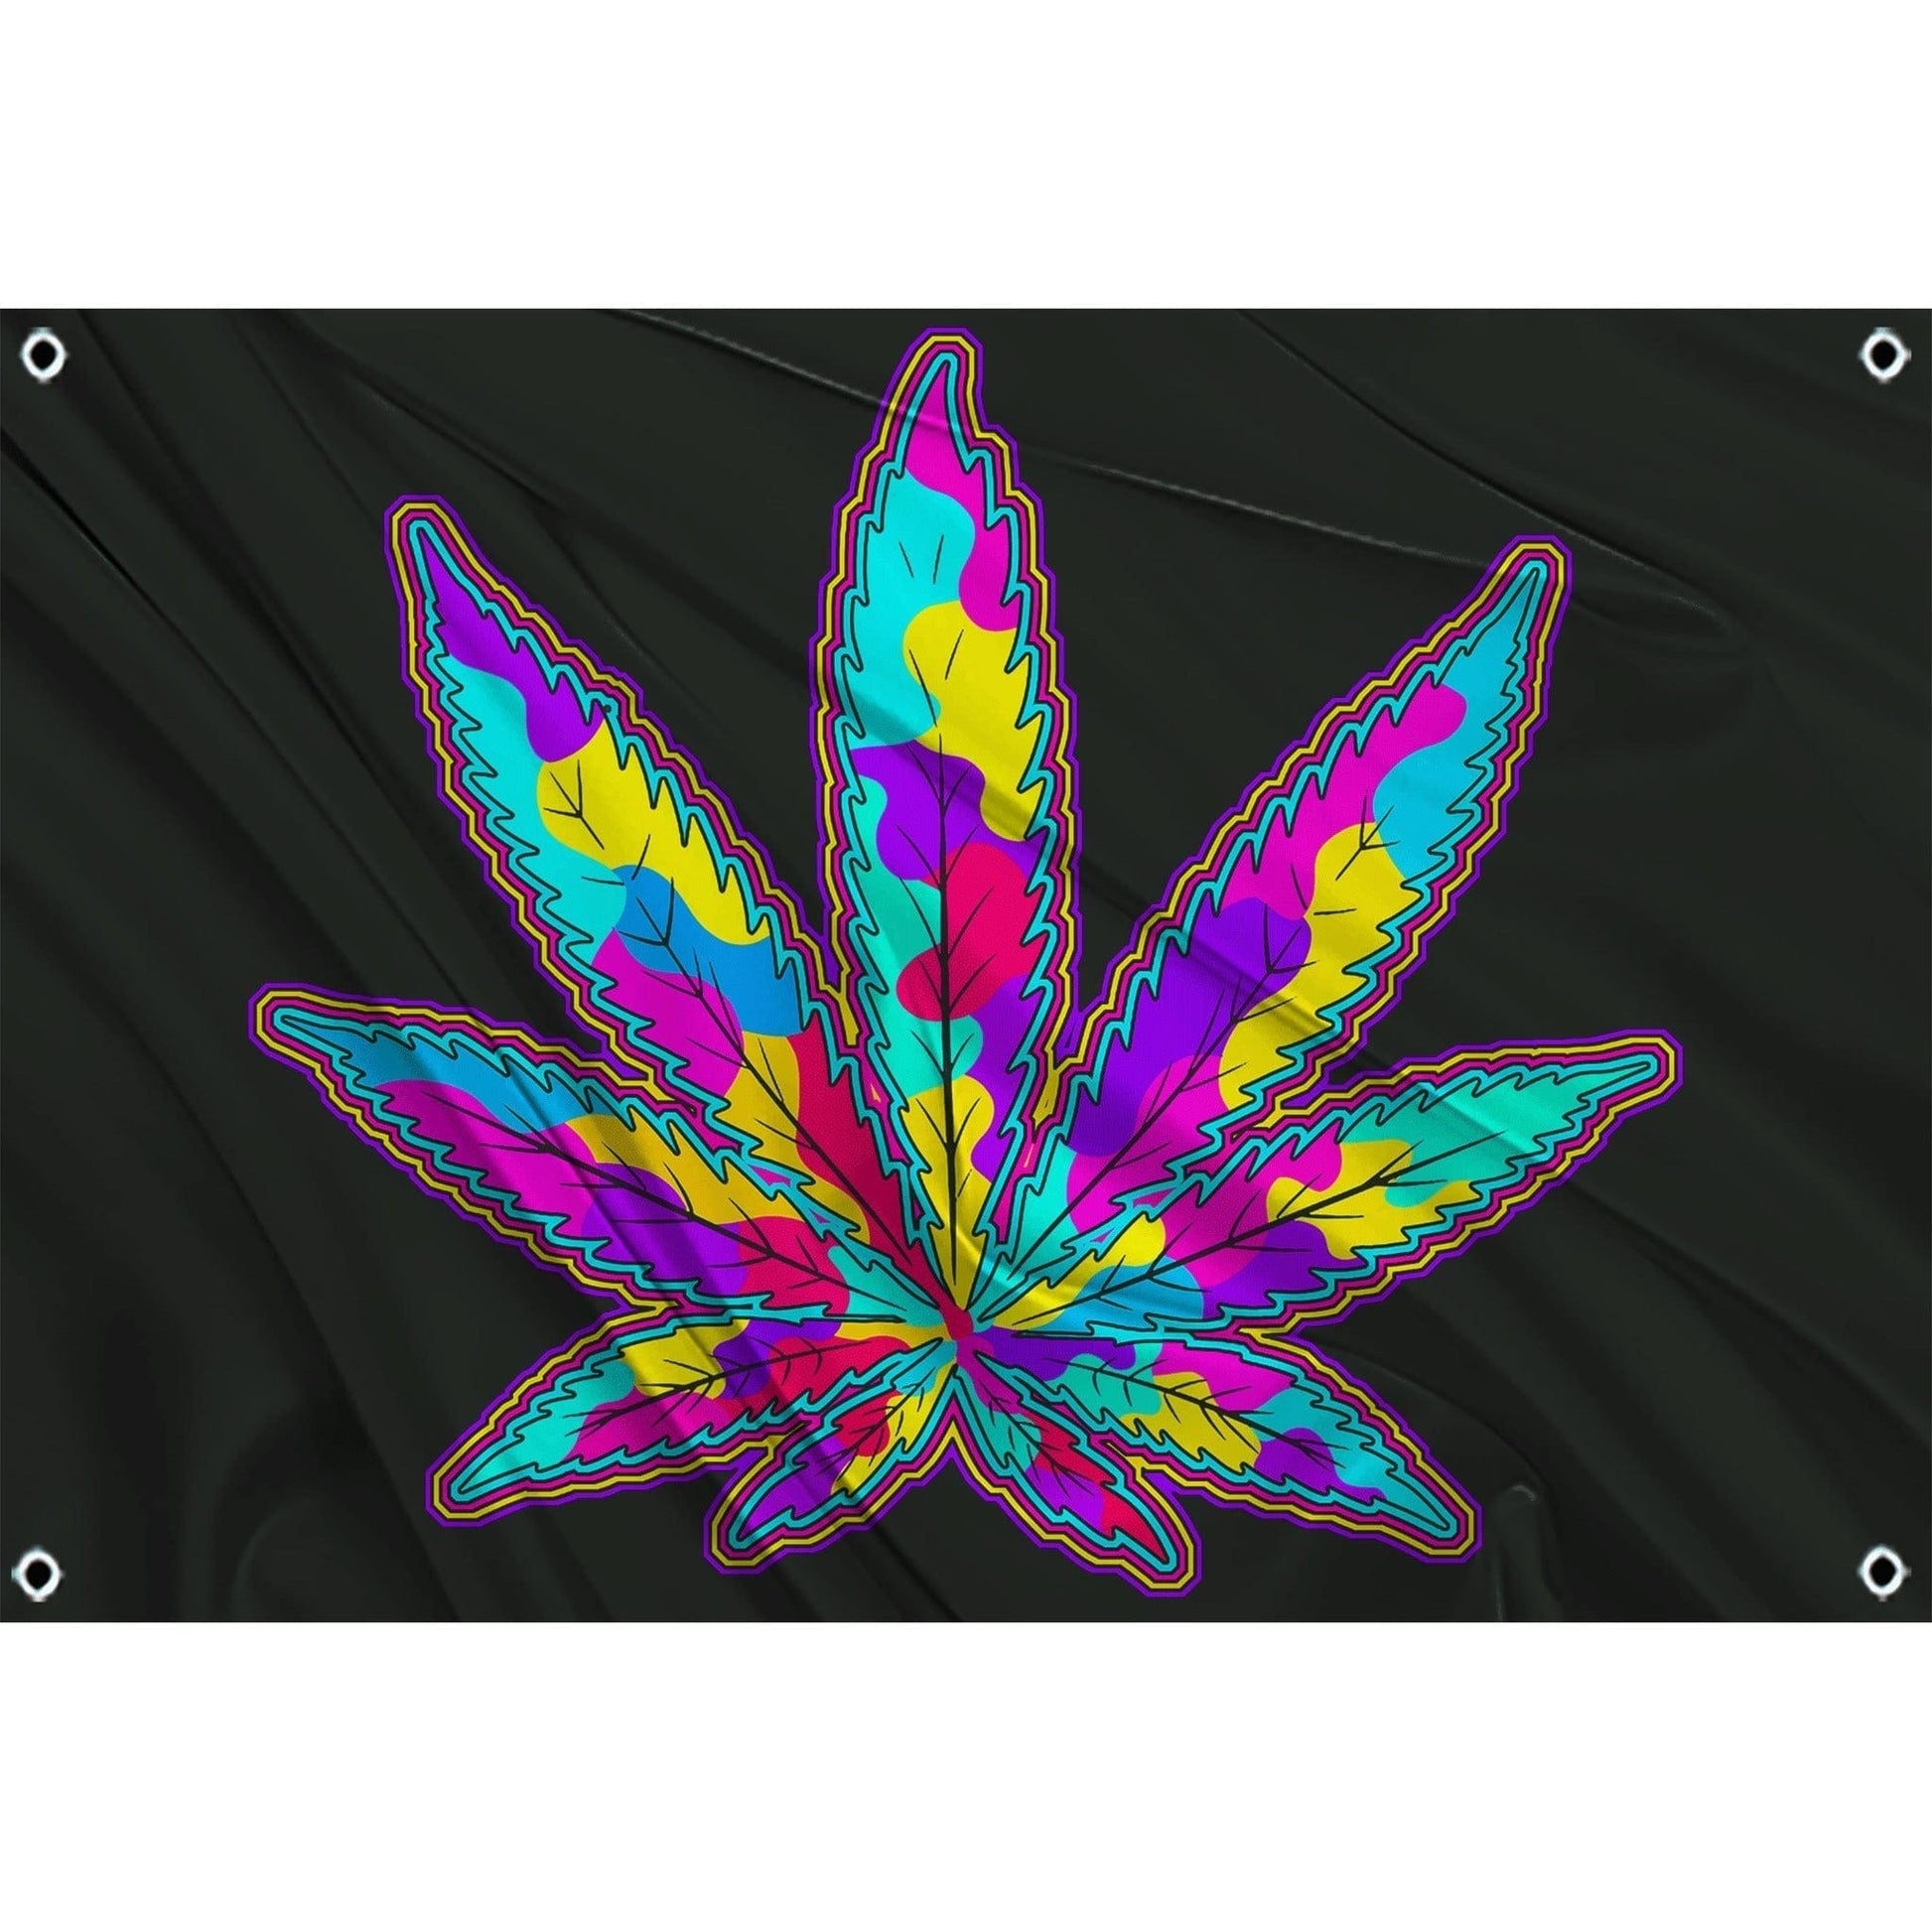 festflags Trippy 1 X 2 / Single Sided Trippy Weed Leaf Flag